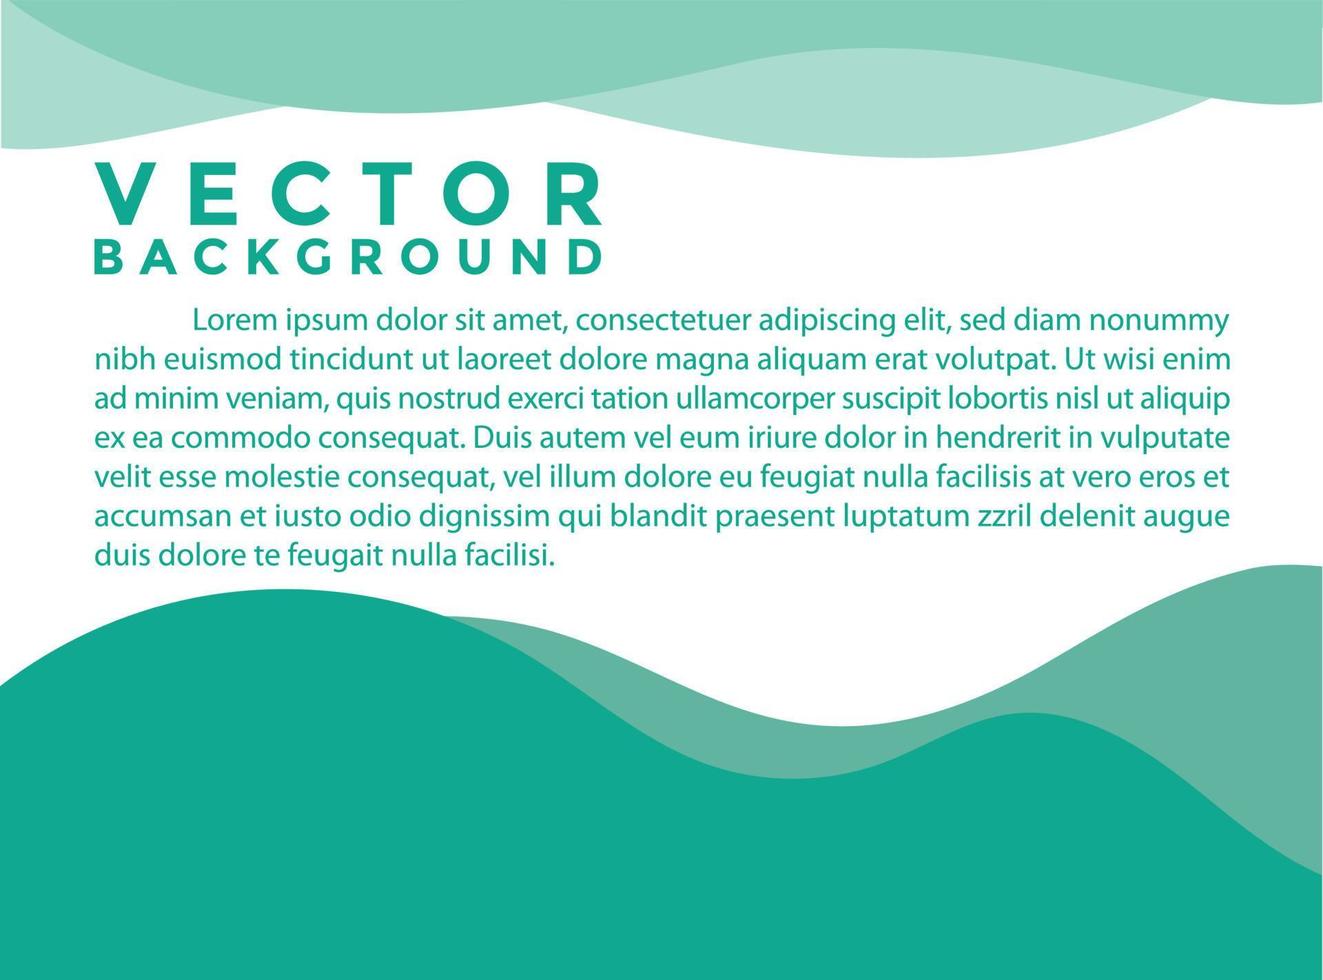 groene achtergrond vector illustratie verlichting effect afbeelding voor tekst en message board ontwerp infographic.